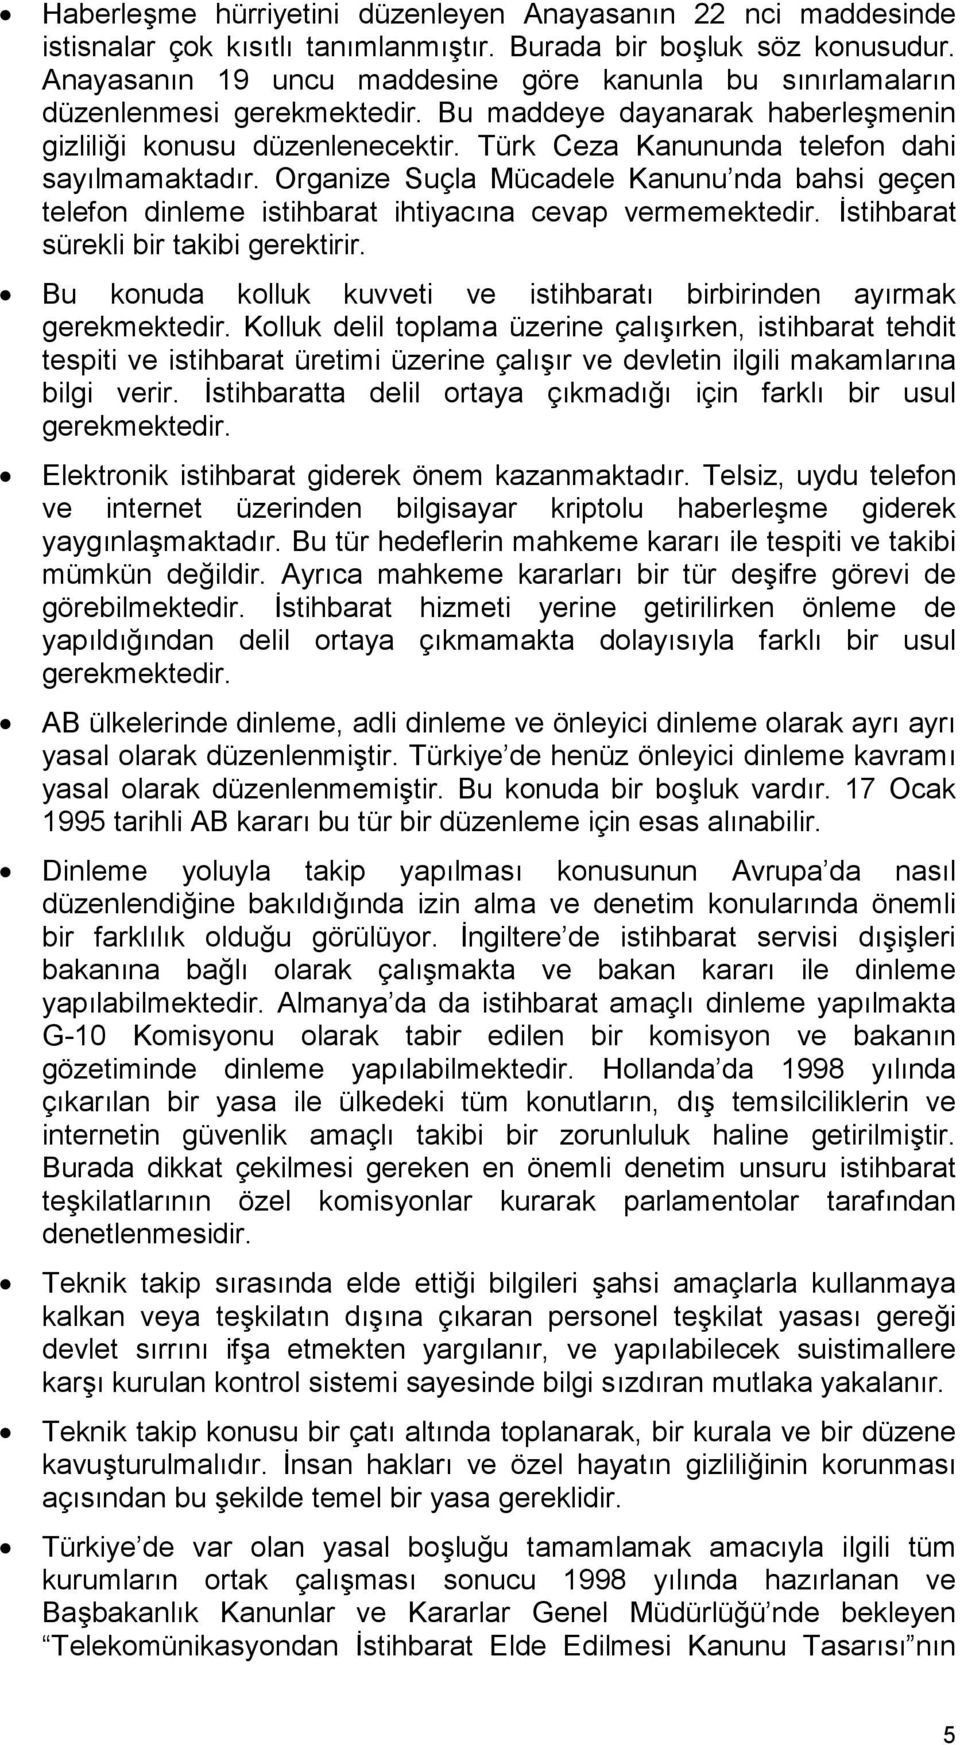 Türk Ceza Kanununda telefon dahi sayılmamaktadır. Organize Suçla Mücadele Kanunu nda bahsi geçen telefon dinleme istihbarat ihtiyacına cevap vermemektedir. İstihbarat sürekli bir takibi gerektirir.